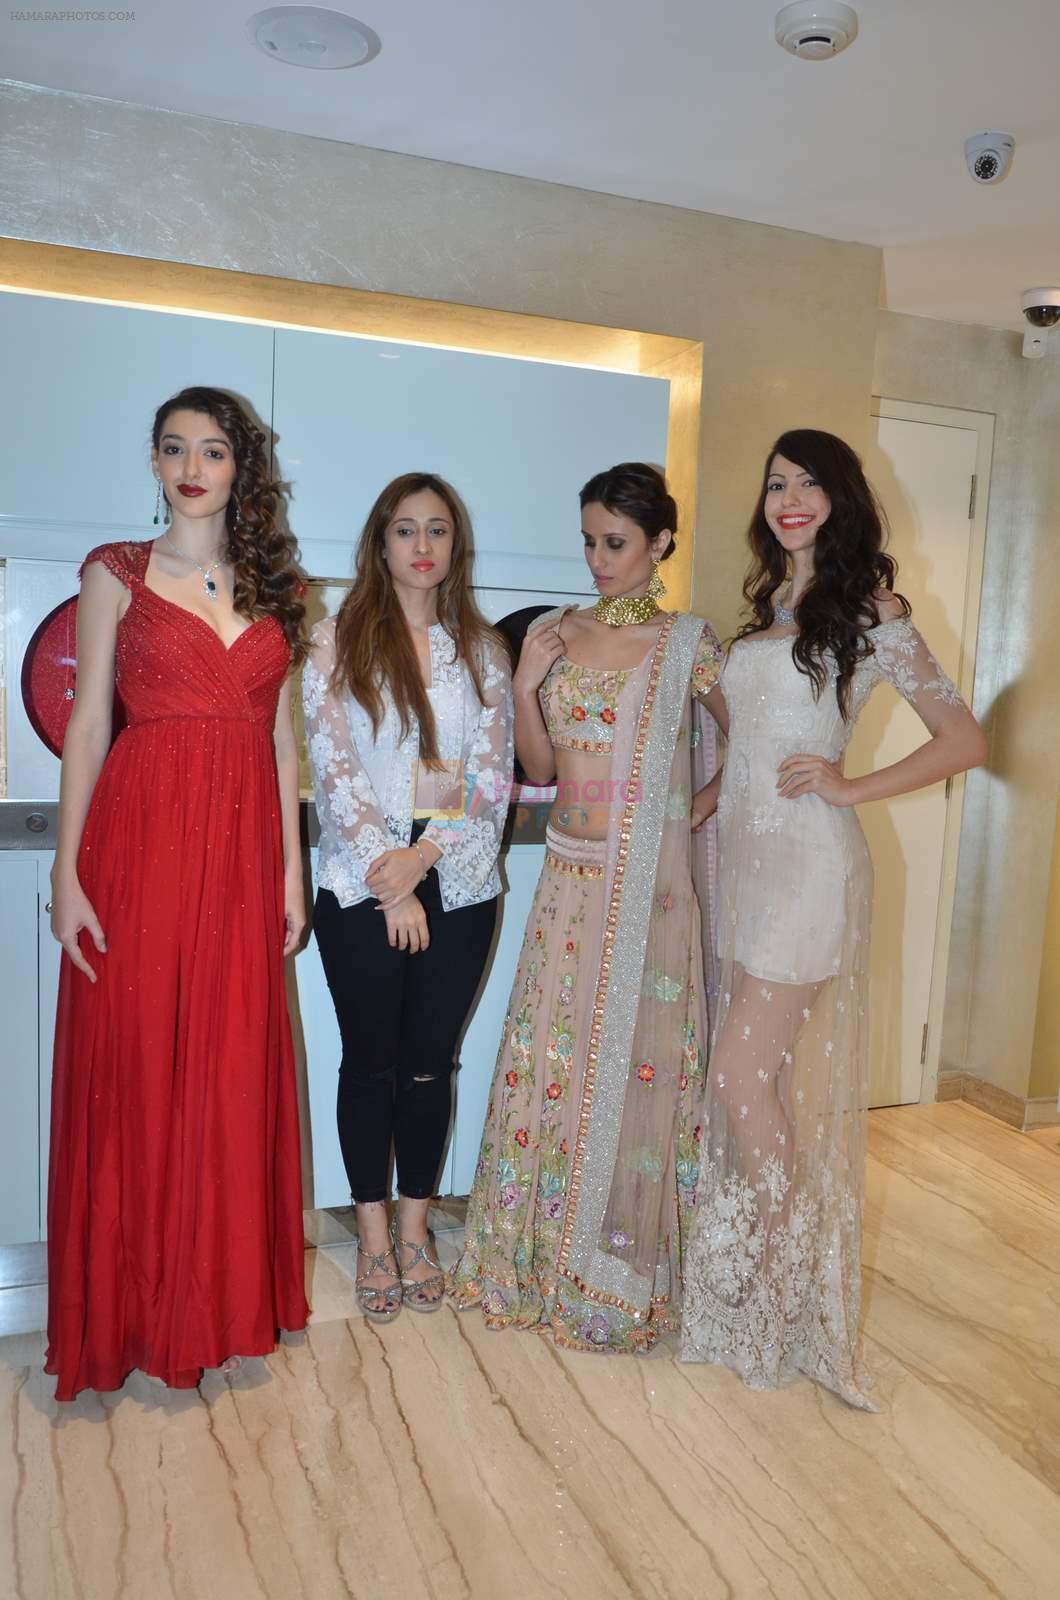 Model in Shehla Khan Store for Zoya in Khar on 11th July 2015